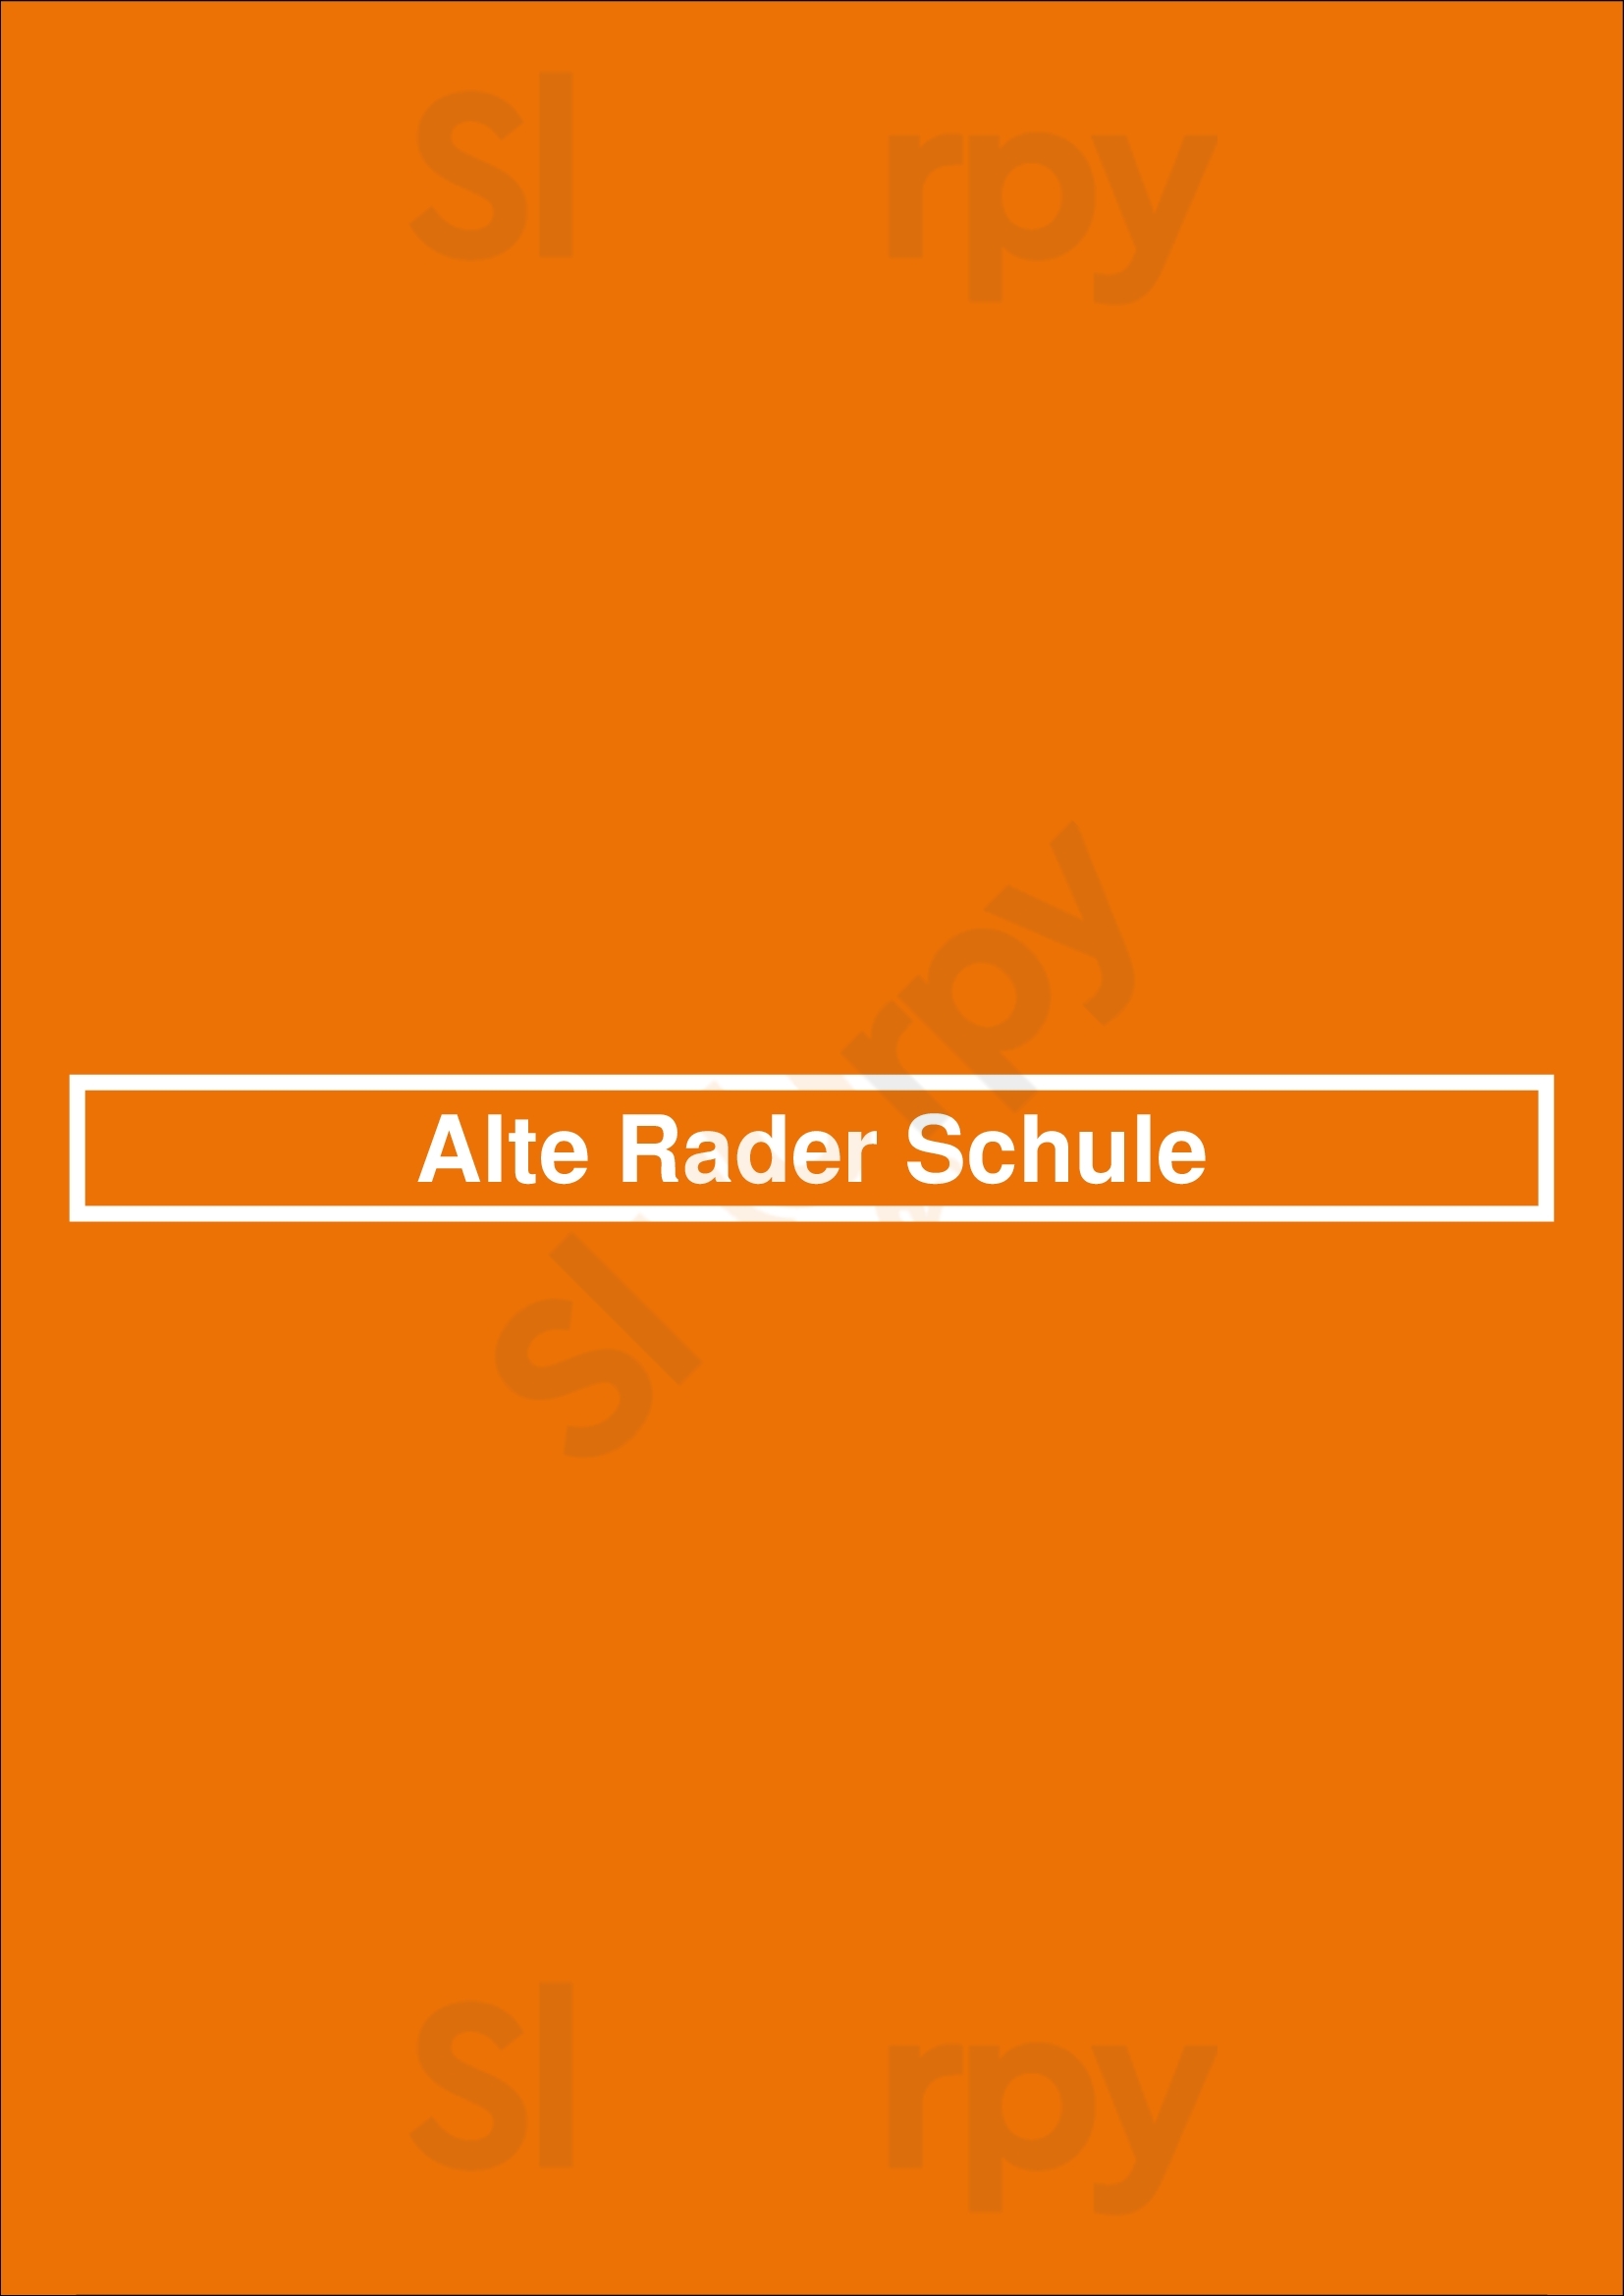 Alte Rader Schule Tangstedt Menu - 1